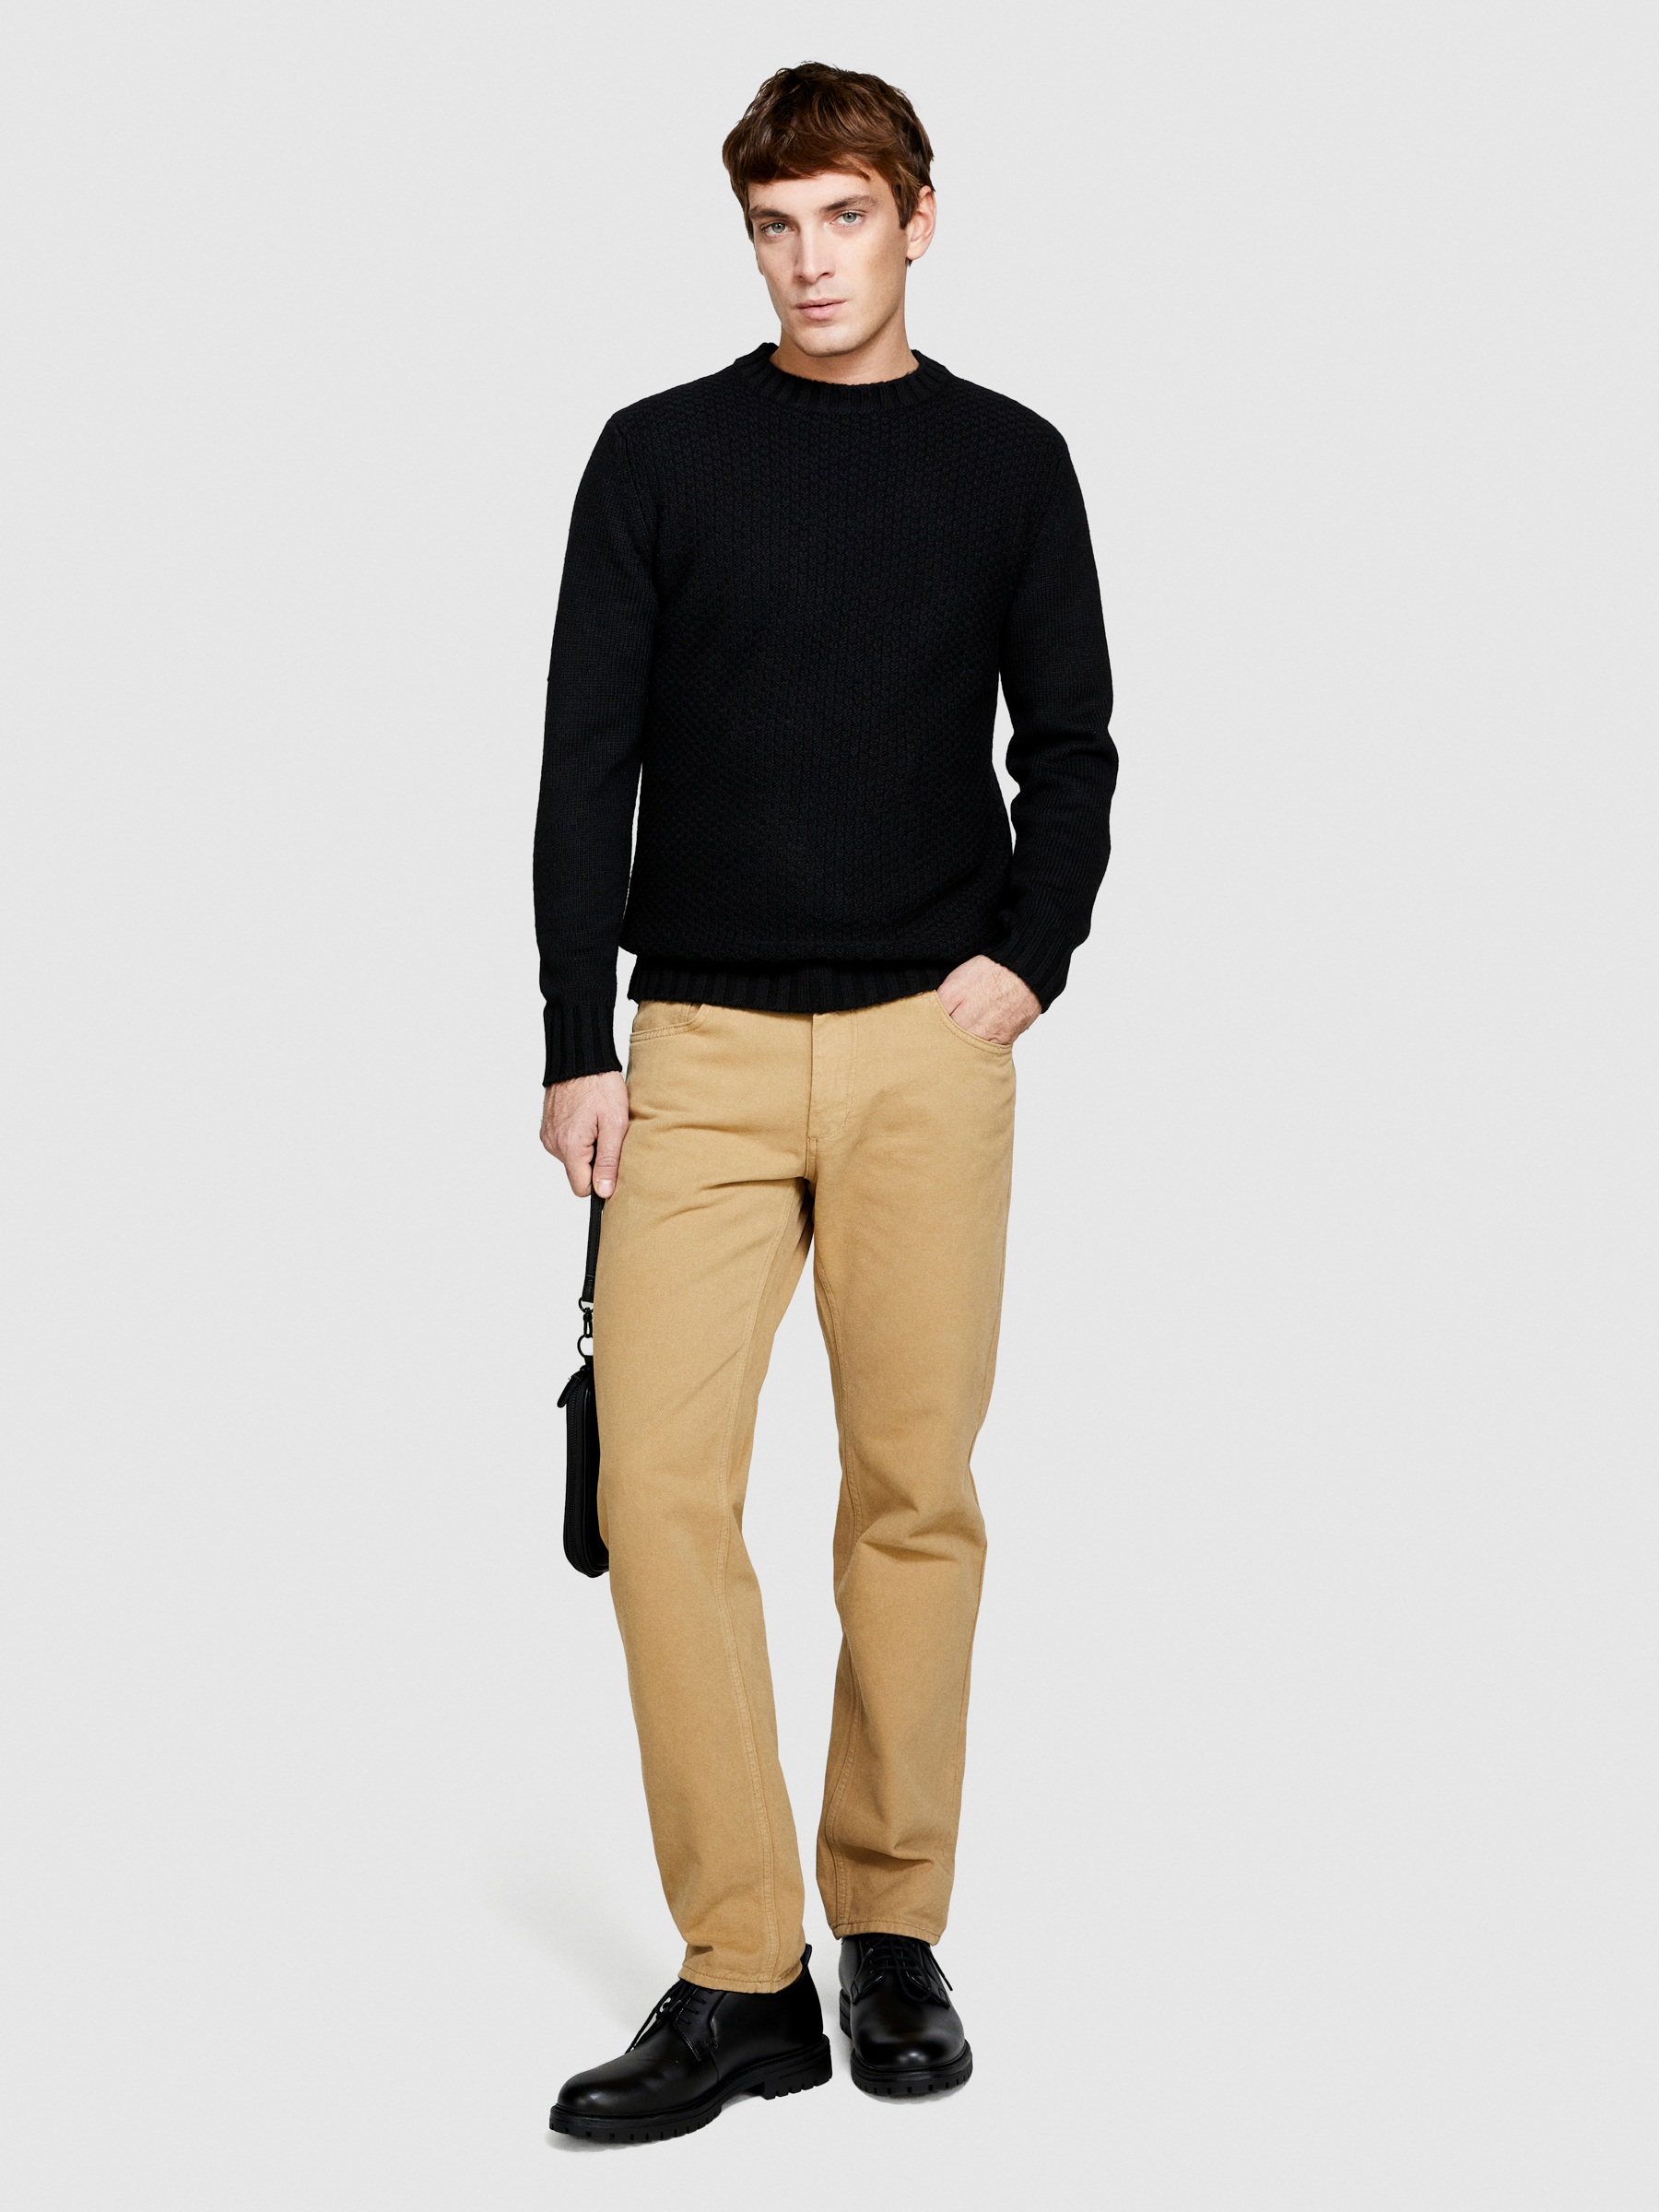 Sisley - Knit Sweater, Man, Black, Size: L